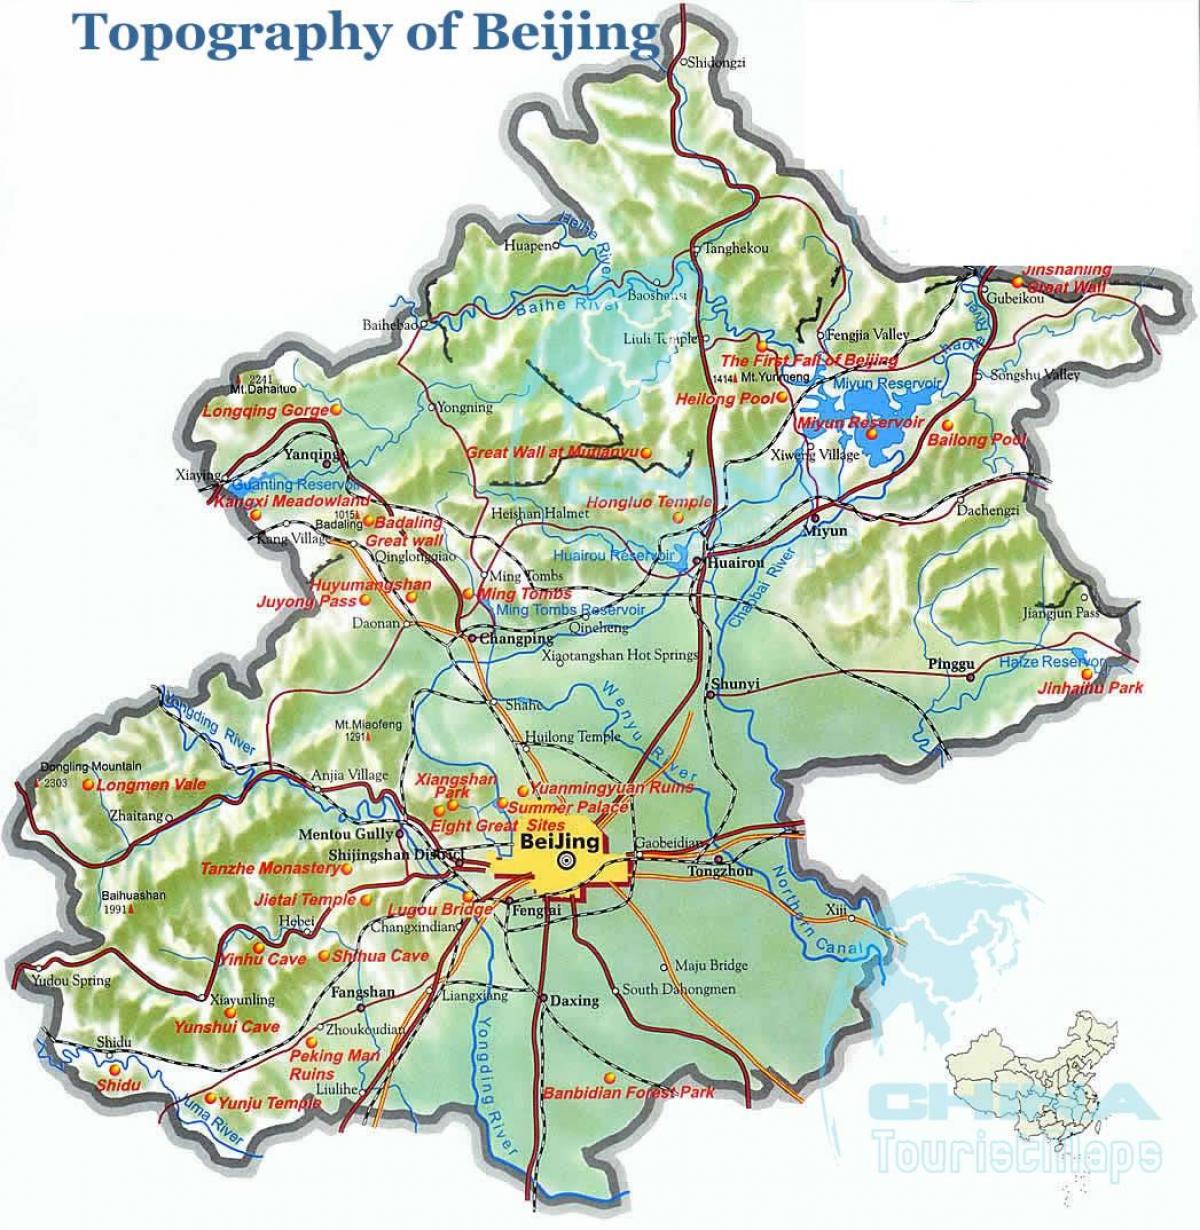 térkép Pekingi topográfiai